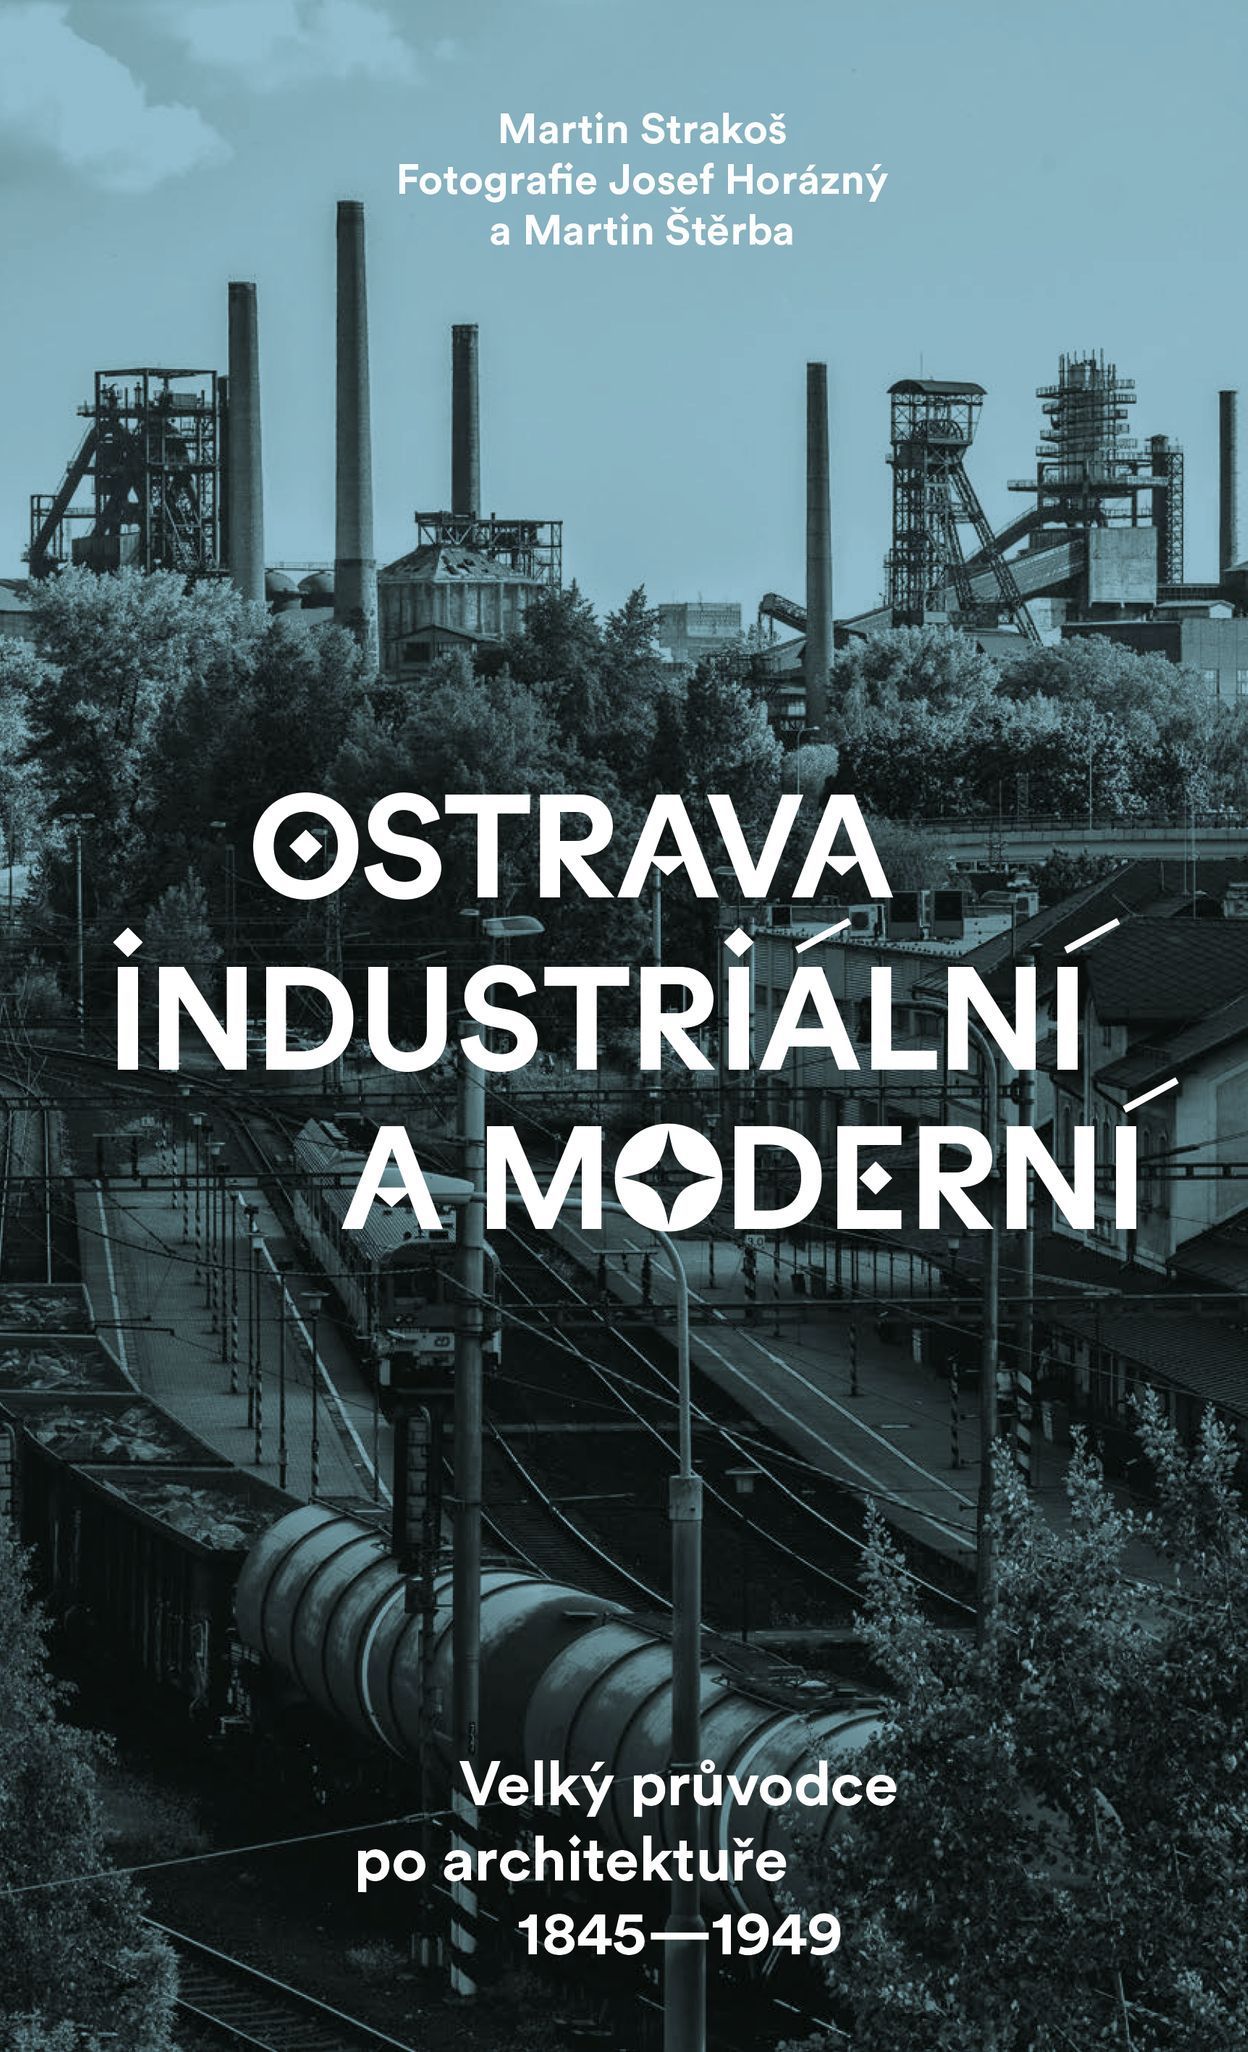 Fotografie z knihy Ostrava industriální a moderní (Martin Strakoš, Josef Horázný a Martin Štěrba)